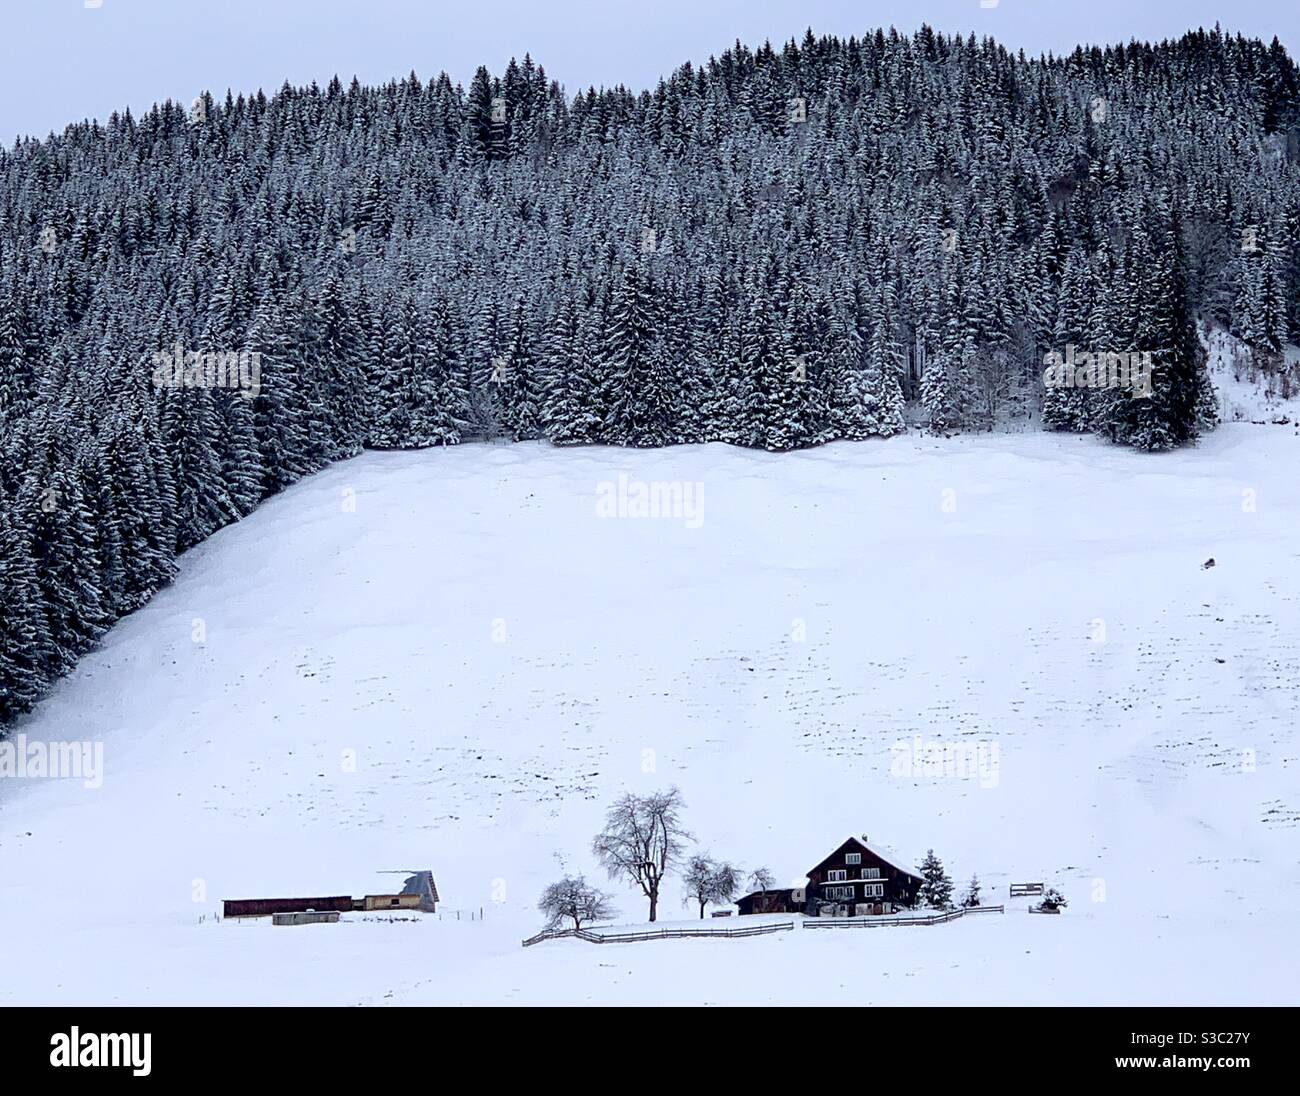 Una casa colonica solitaria con su una collina circondata da una foresta di conifere in inverno. Tutto è coperto da uno spesso strato di neve e sembra una favola. Foto Stock